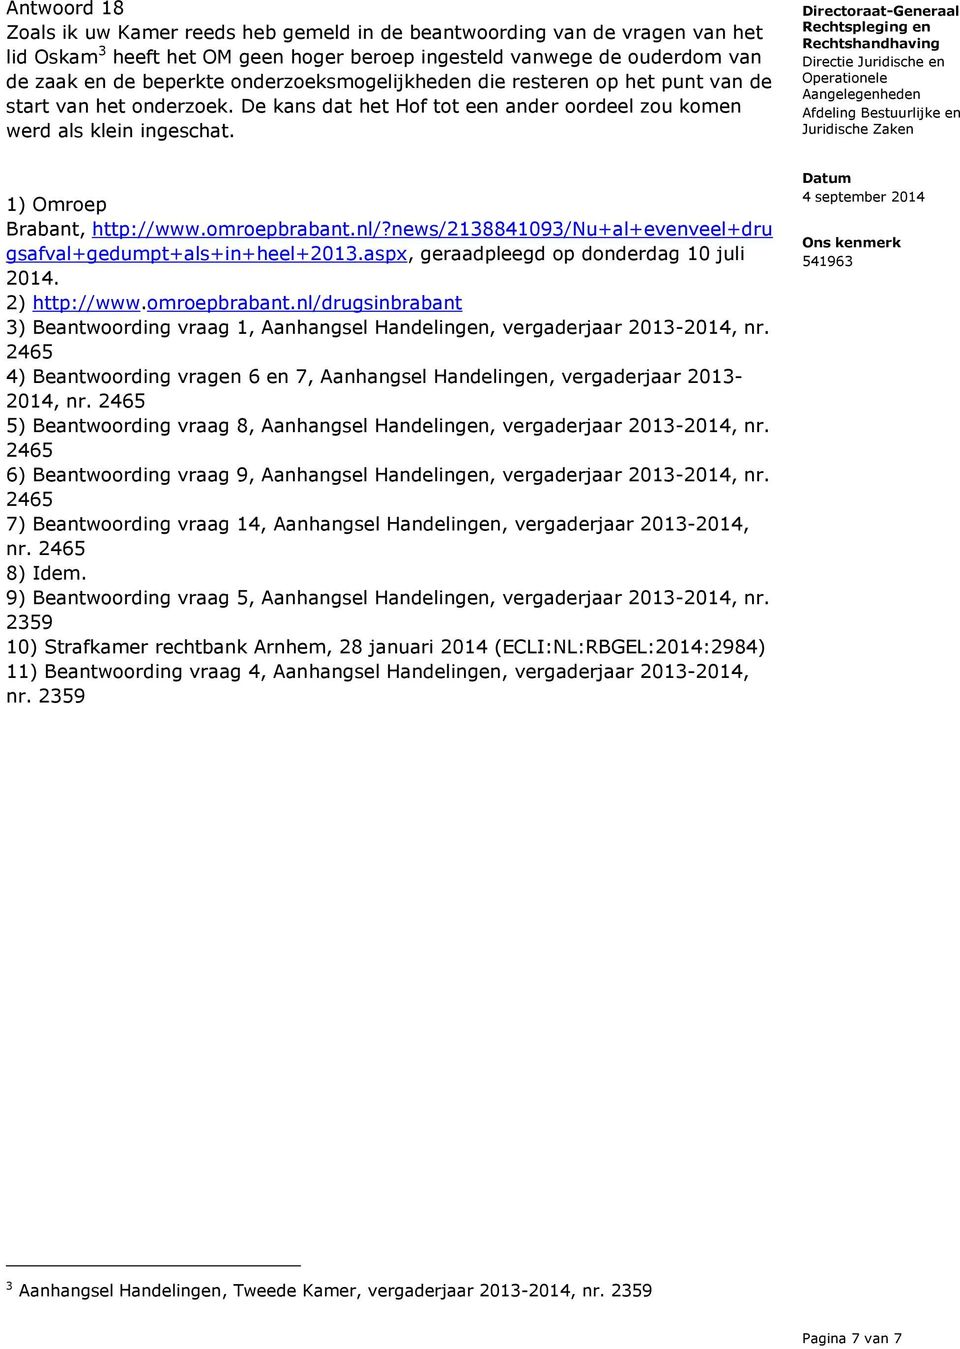 omroepbrabant.nl/?news/2138841093/nu+al+evenveel+dru gsafval+gedumpt+als+in+heel+2013.aspx, geraadpleegd op donderdag 10 juli 2014. 2) http://www.omroepbrabant.nl/drugsinbrabant 3) Beantwoording vraag 1, Aanhangsel Handelingen, vergaderjaar 2013-2014, nr.